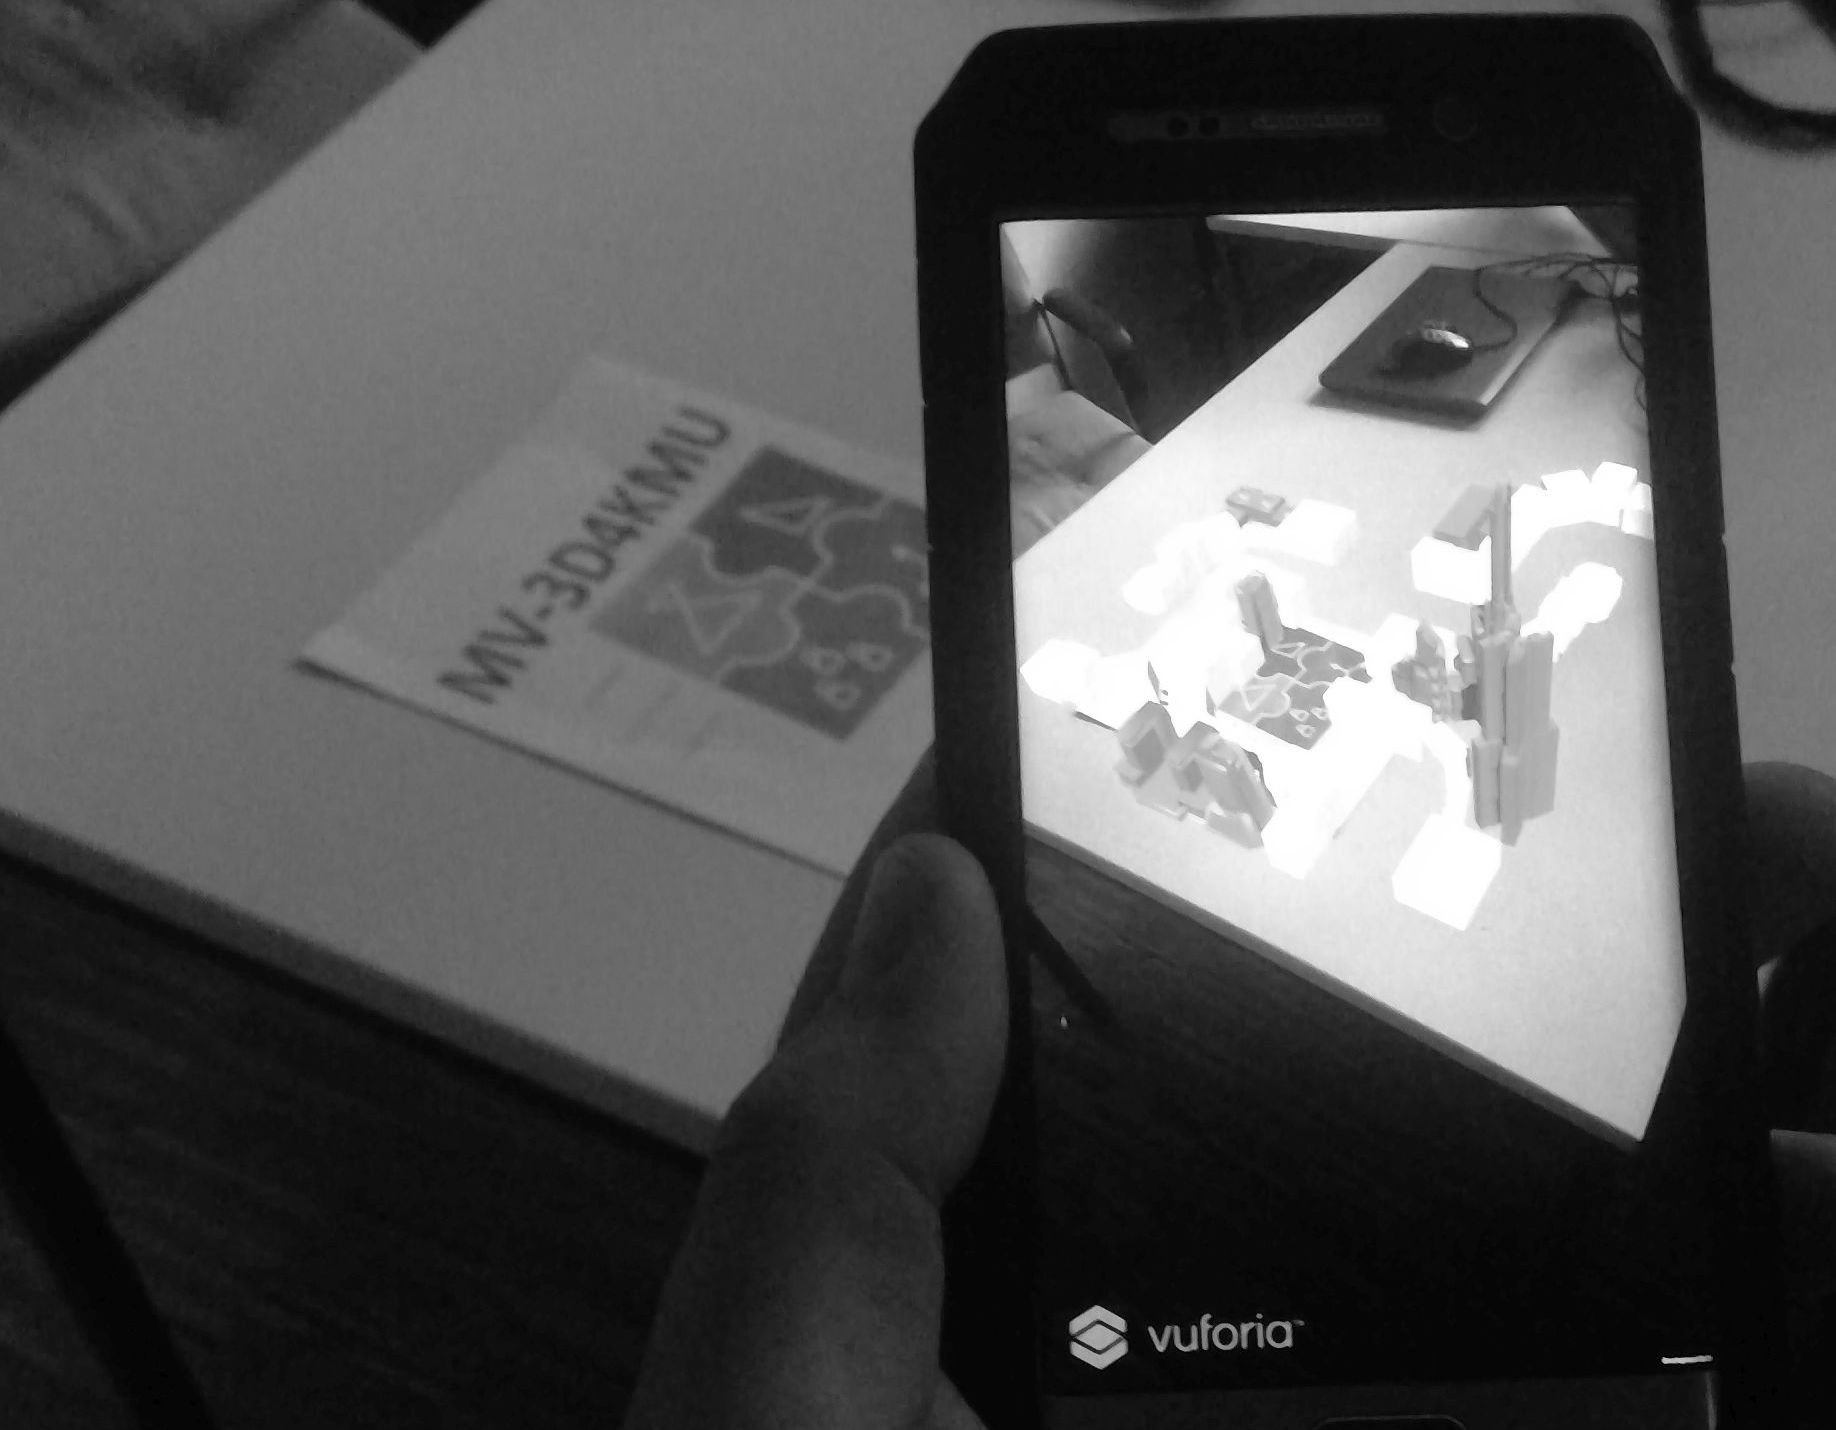 Abbildung 1: Das Bild zeigt ein Handy und einen Tisch auf dem ein A4-Blatt liegt, mit dem Projektlogo 'MV-3D4KMU'. Auf dem Bildschirm befindet sich die Android Anwendung mit dem virtuellen 3D Modell visualisiert im Kamerabild des Handys.